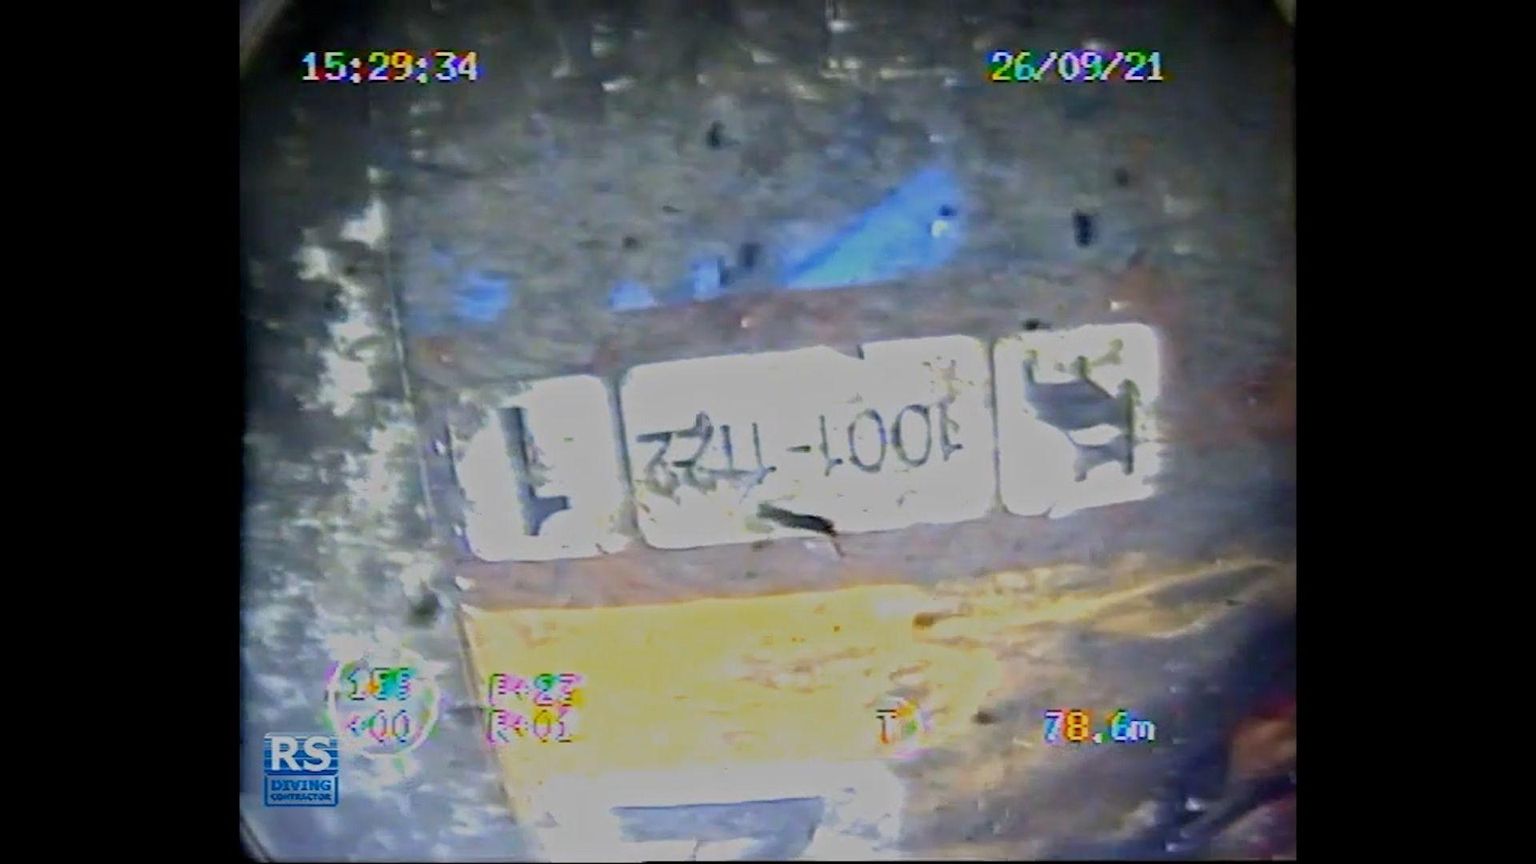 Kaader videost: Uks, mille kaudu pääses vesi ametlike raportite järgi autotekilt alumistele tekkidele.